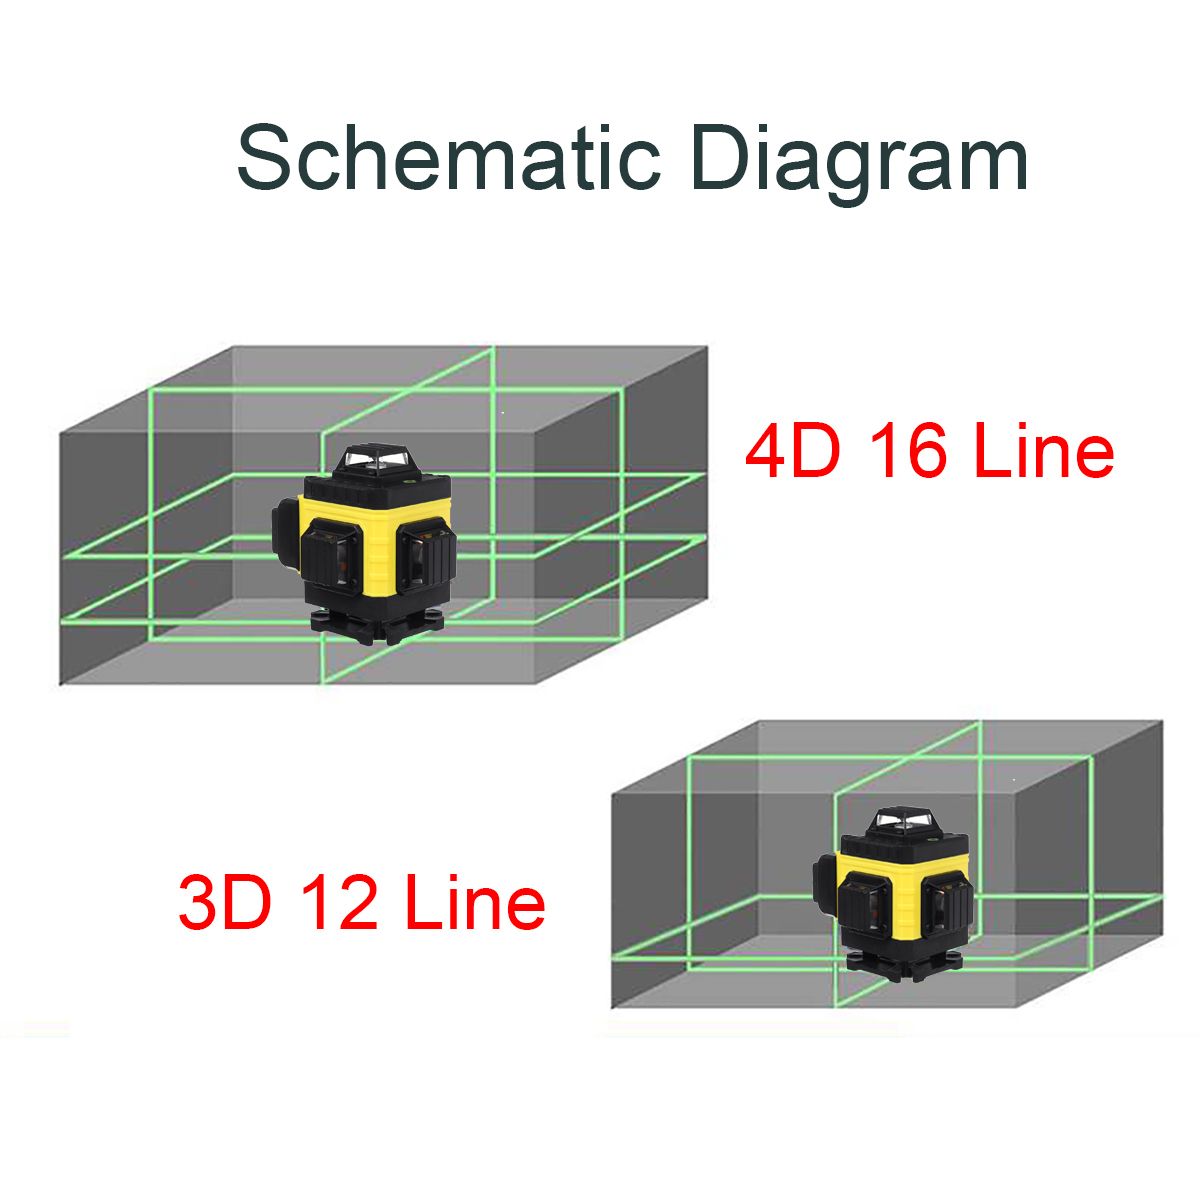 1216-Line-4D-Laser-Level-Green-Light-Digital-Self-Leveling-360deg-Rotary-Measure-with-6000mah-Batter-1759308